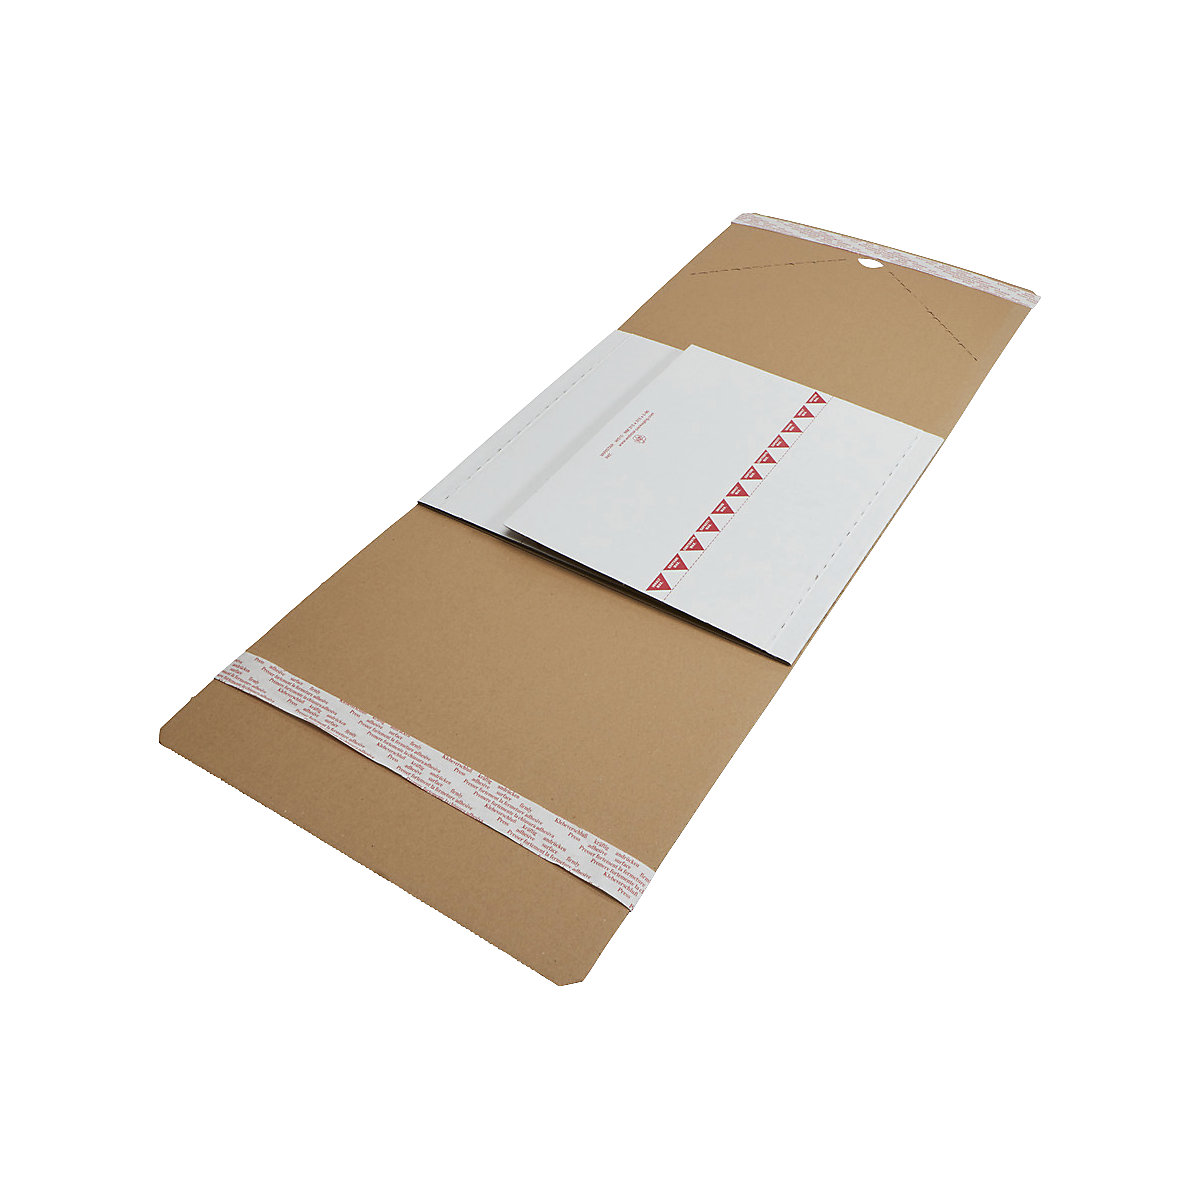 Imballaggio per libri Varistar – flow, chiusura autoadesiva doppia, lungh. x largh. 315 x 315 mm, a partire da 60 pz.-5